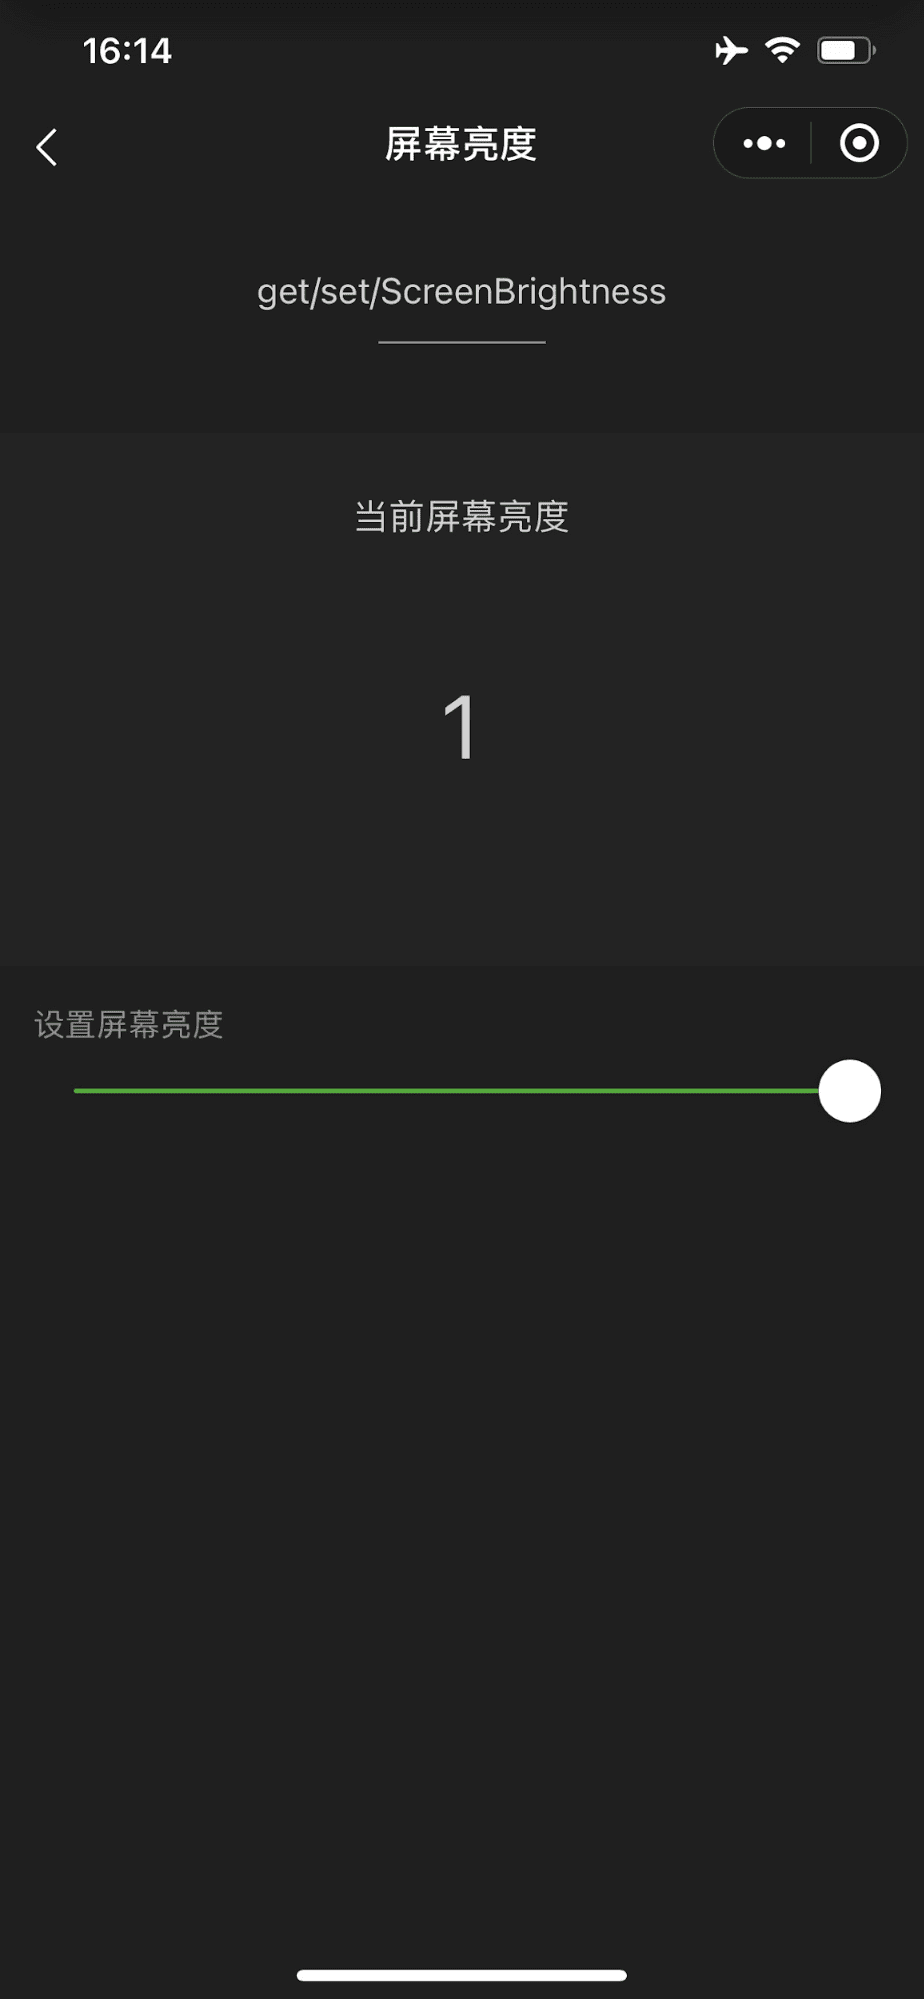 Die Mini-App von WeChat Demo zeigt einen Schieberegler, mit dem die Helligkeit des Geräts ganz nach oben gesteuert wird.